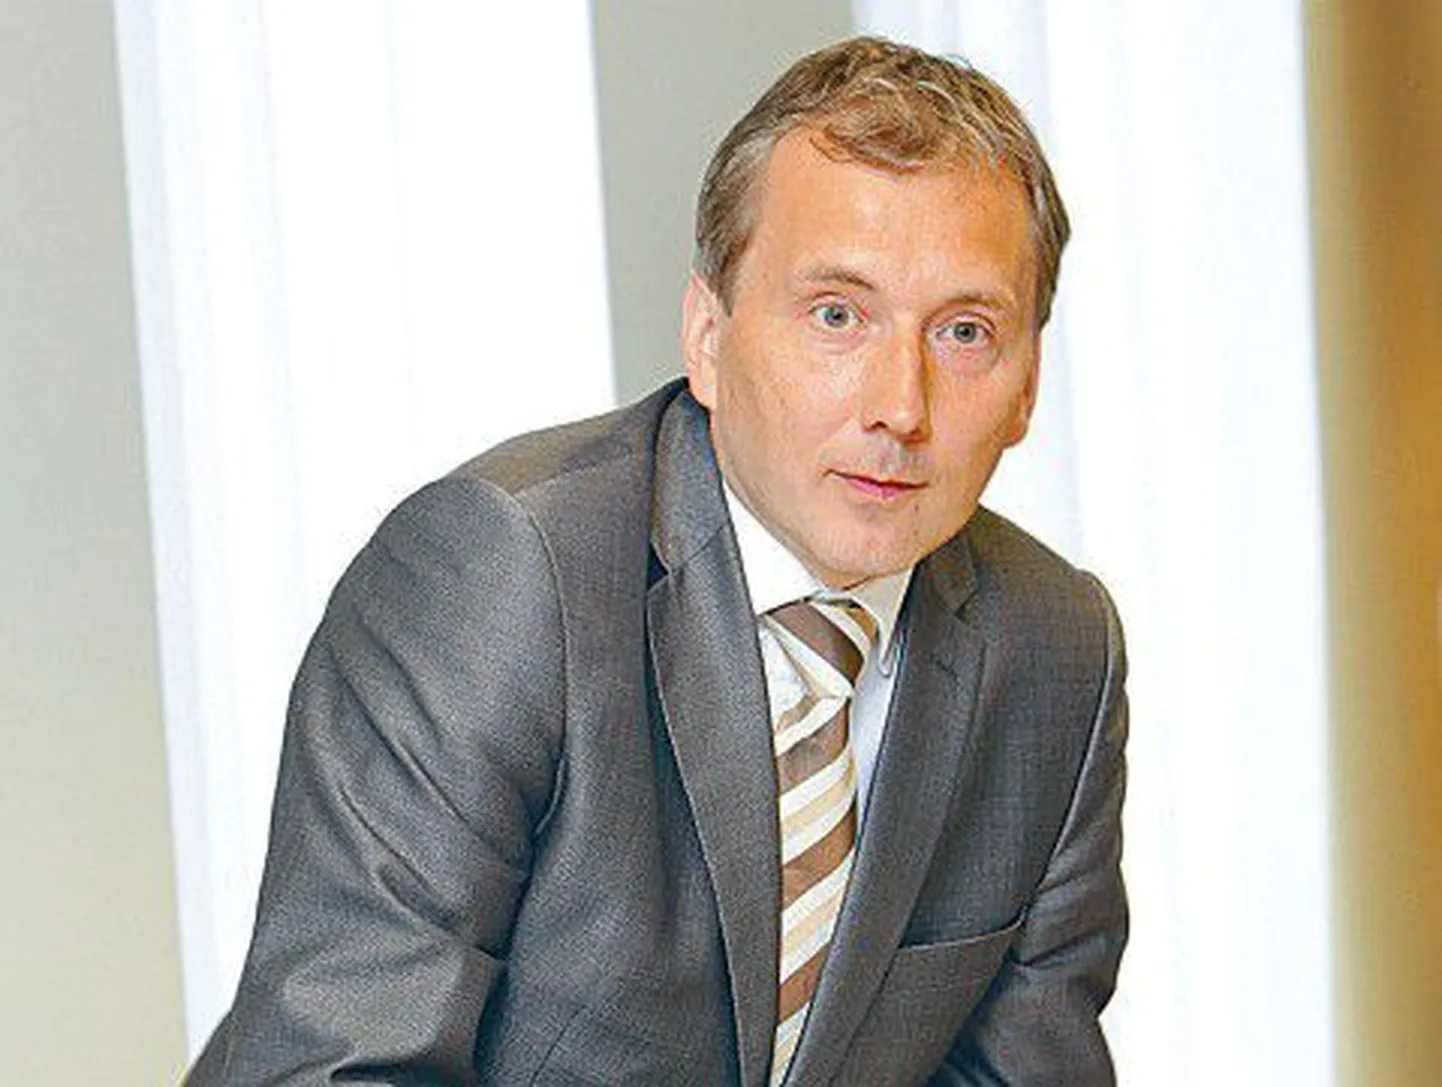 Eesti Suusaliidu president Sandor Liive.